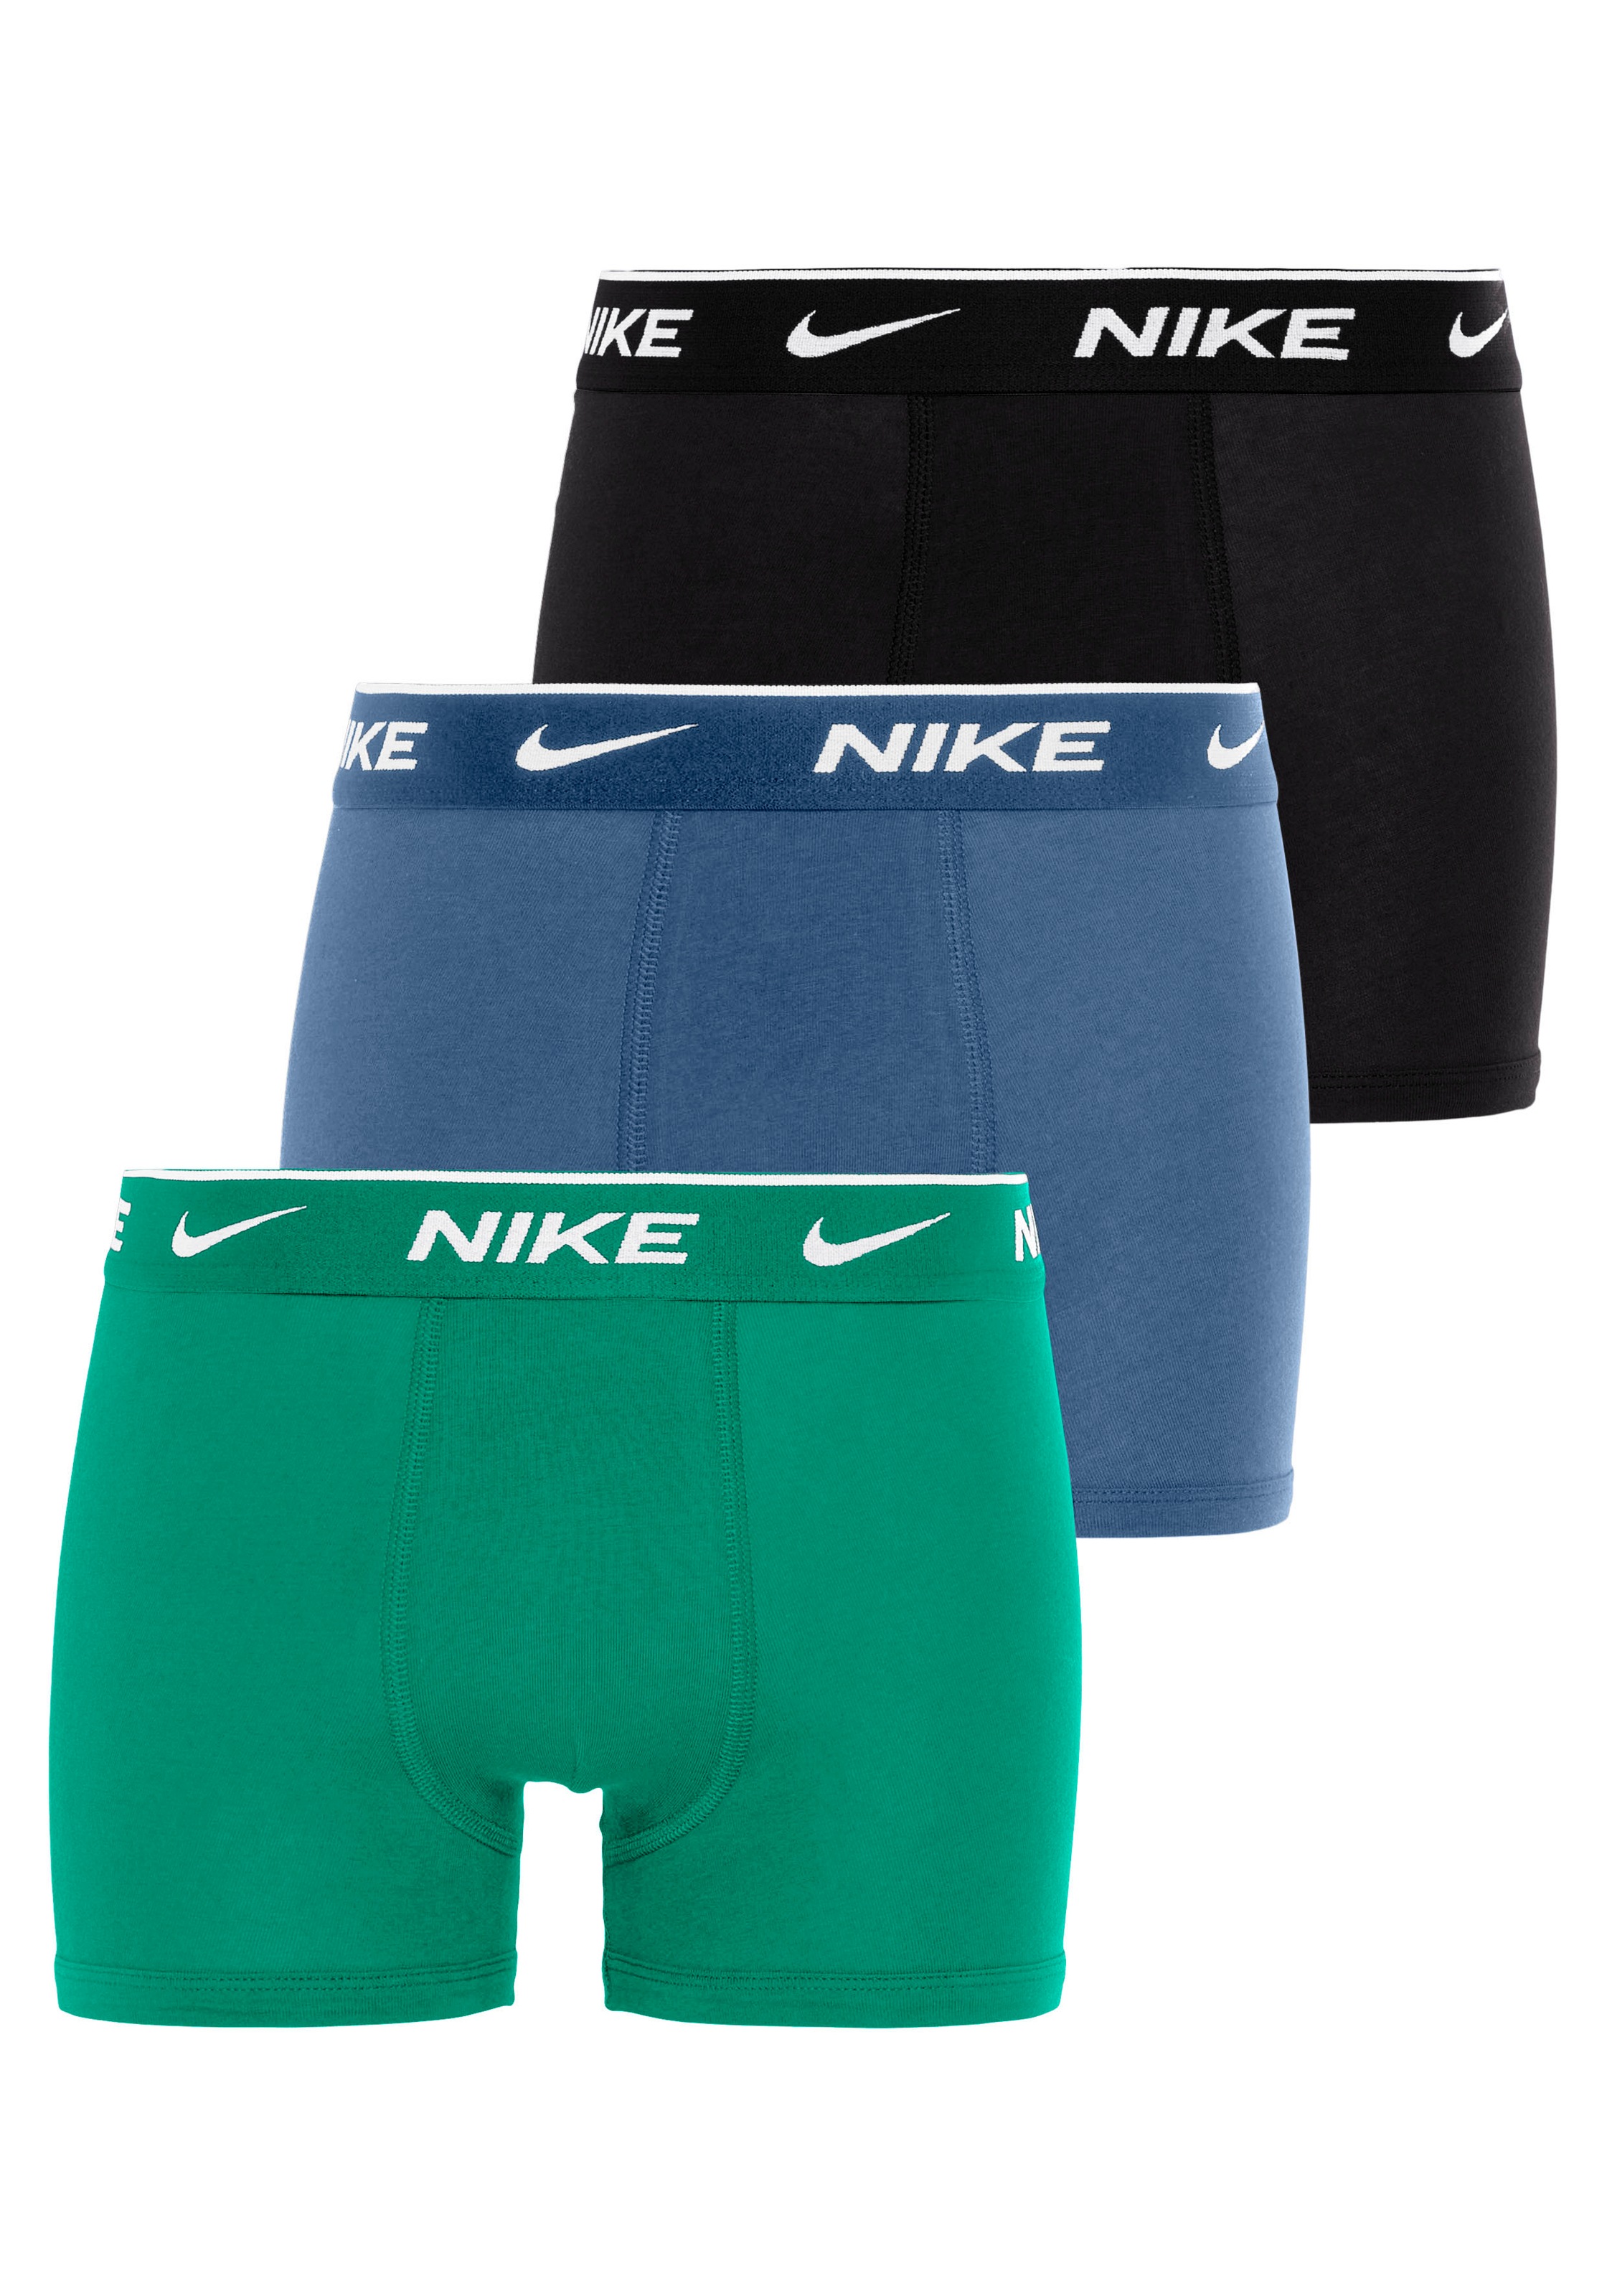 Nike Sportswear Boxershorts 3PK ( Packung, COTTON bei »EVERYDAY 3 St., für Kinder«, BOXER BRIEF OTTO 3er-Pack) online